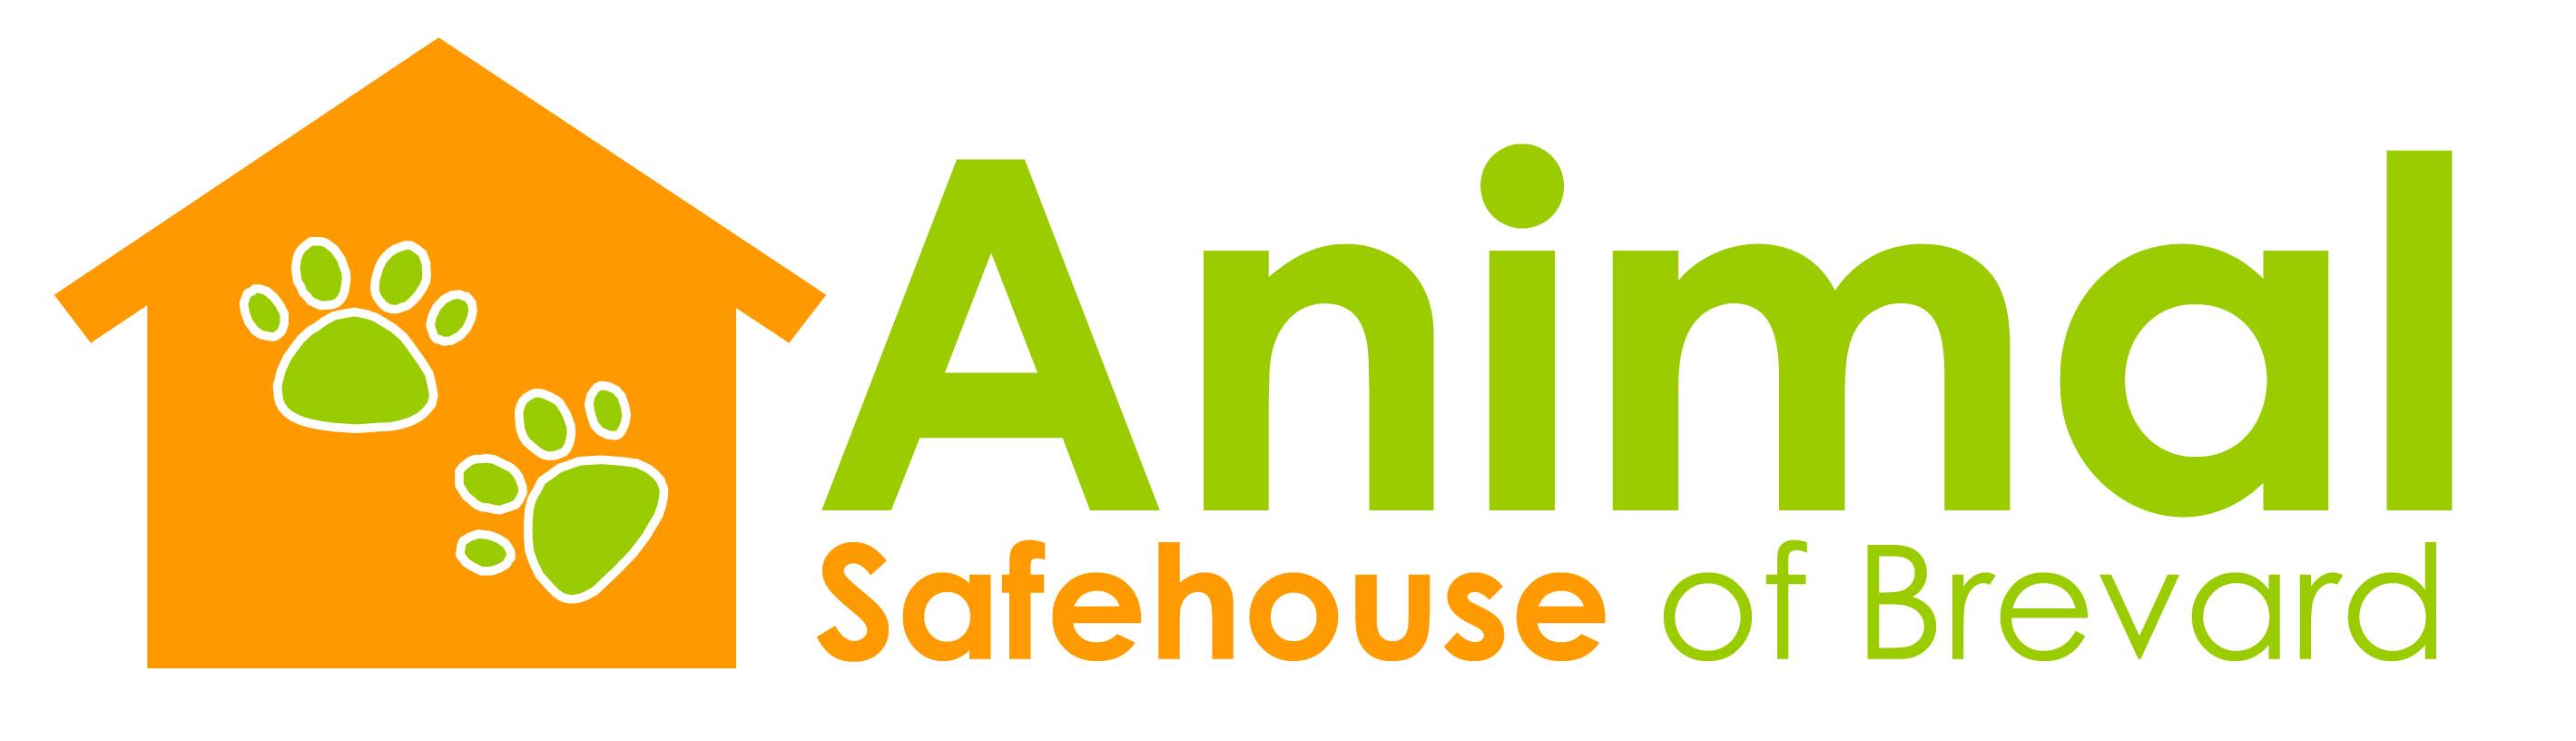 Animal Safehouse